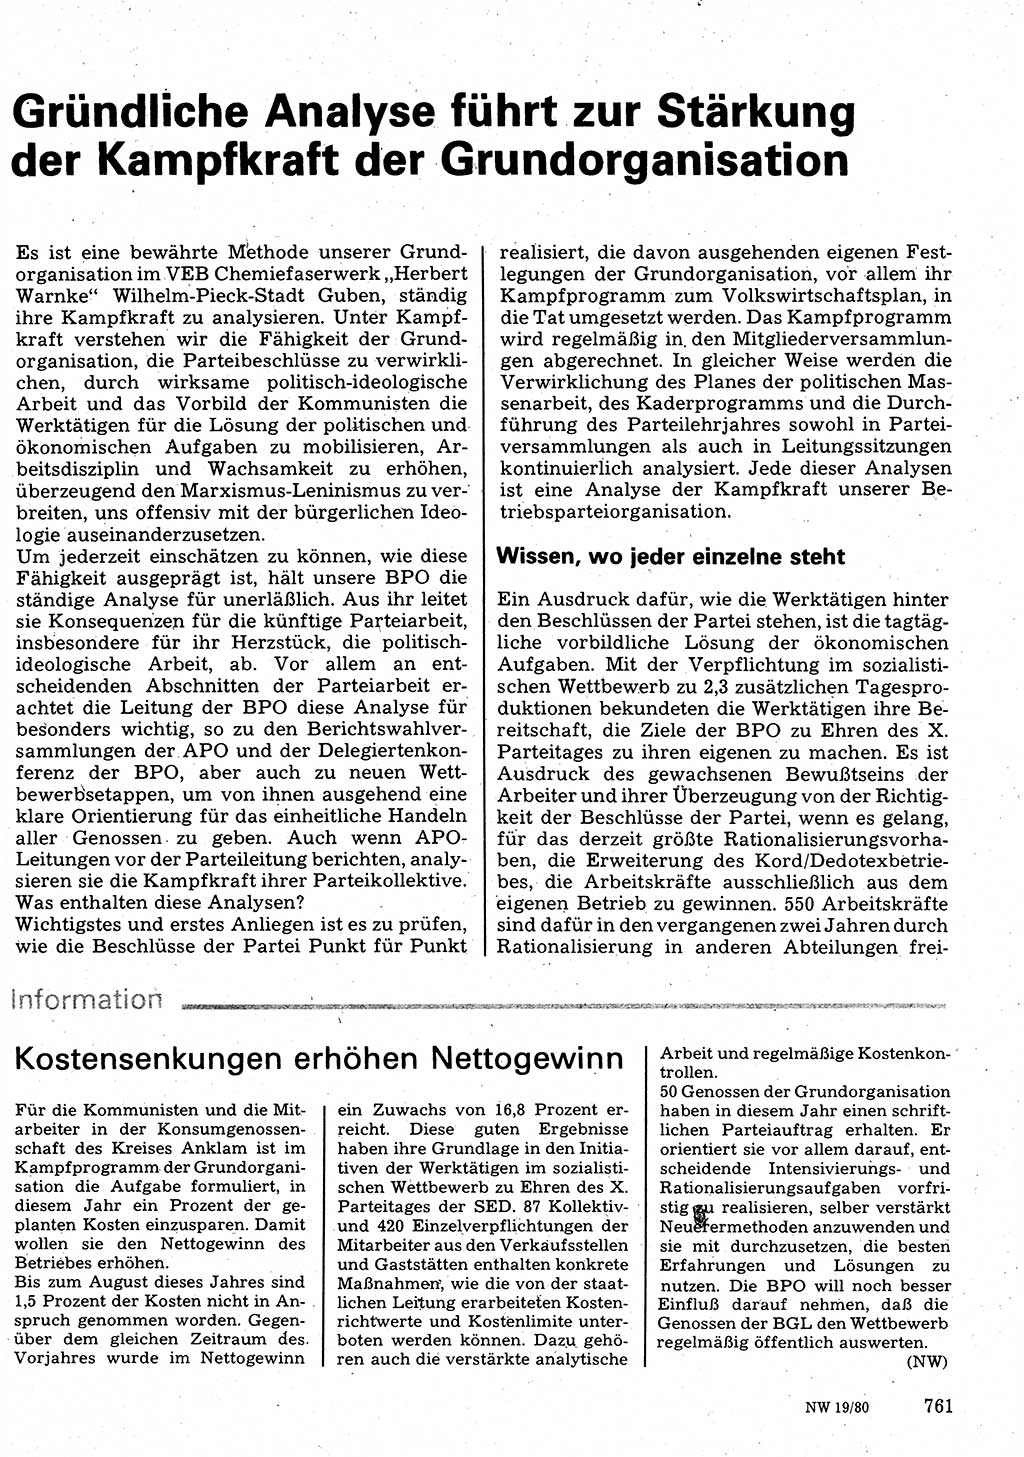 Neuer Weg (NW), Organ des Zentralkomitees (ZK) der SED (Sozialistische Einheitspartei Deutschlands) für Fragen des Parteilebens, 35. Jahrgang [Deutsche Demokratische Republik (DDR)] 1980, Seite 761 (NW ZK SED DDR 1980, S. 761)